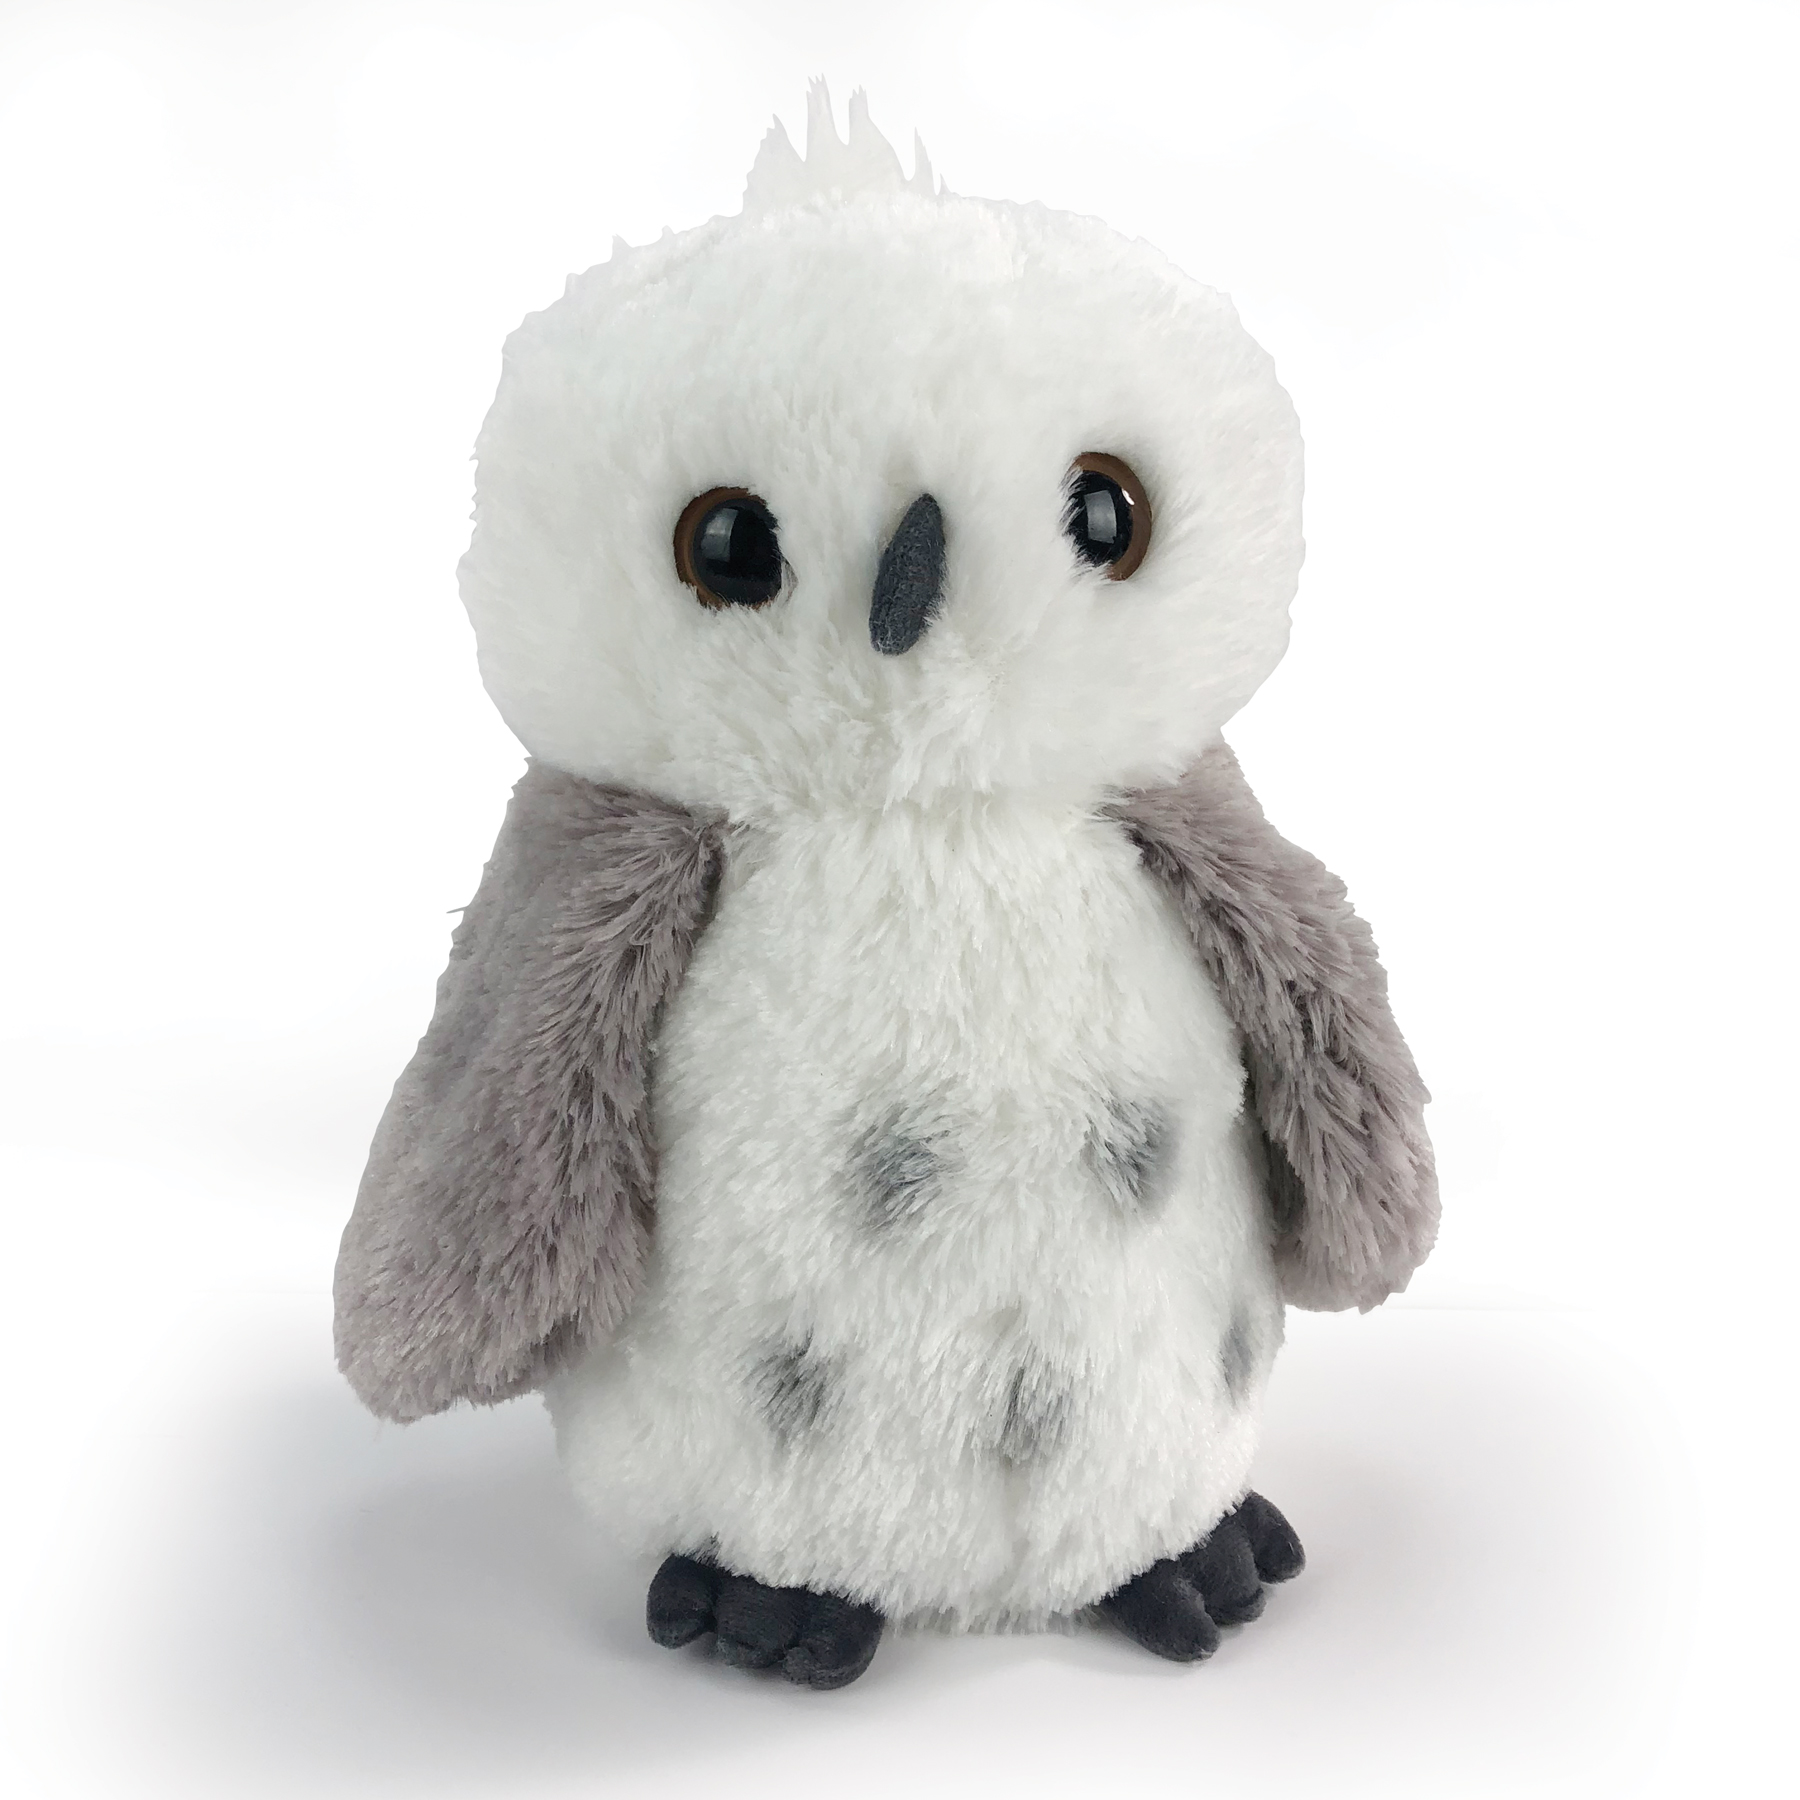 Snow Owl Plush Toy | Stuffed Owl Toy